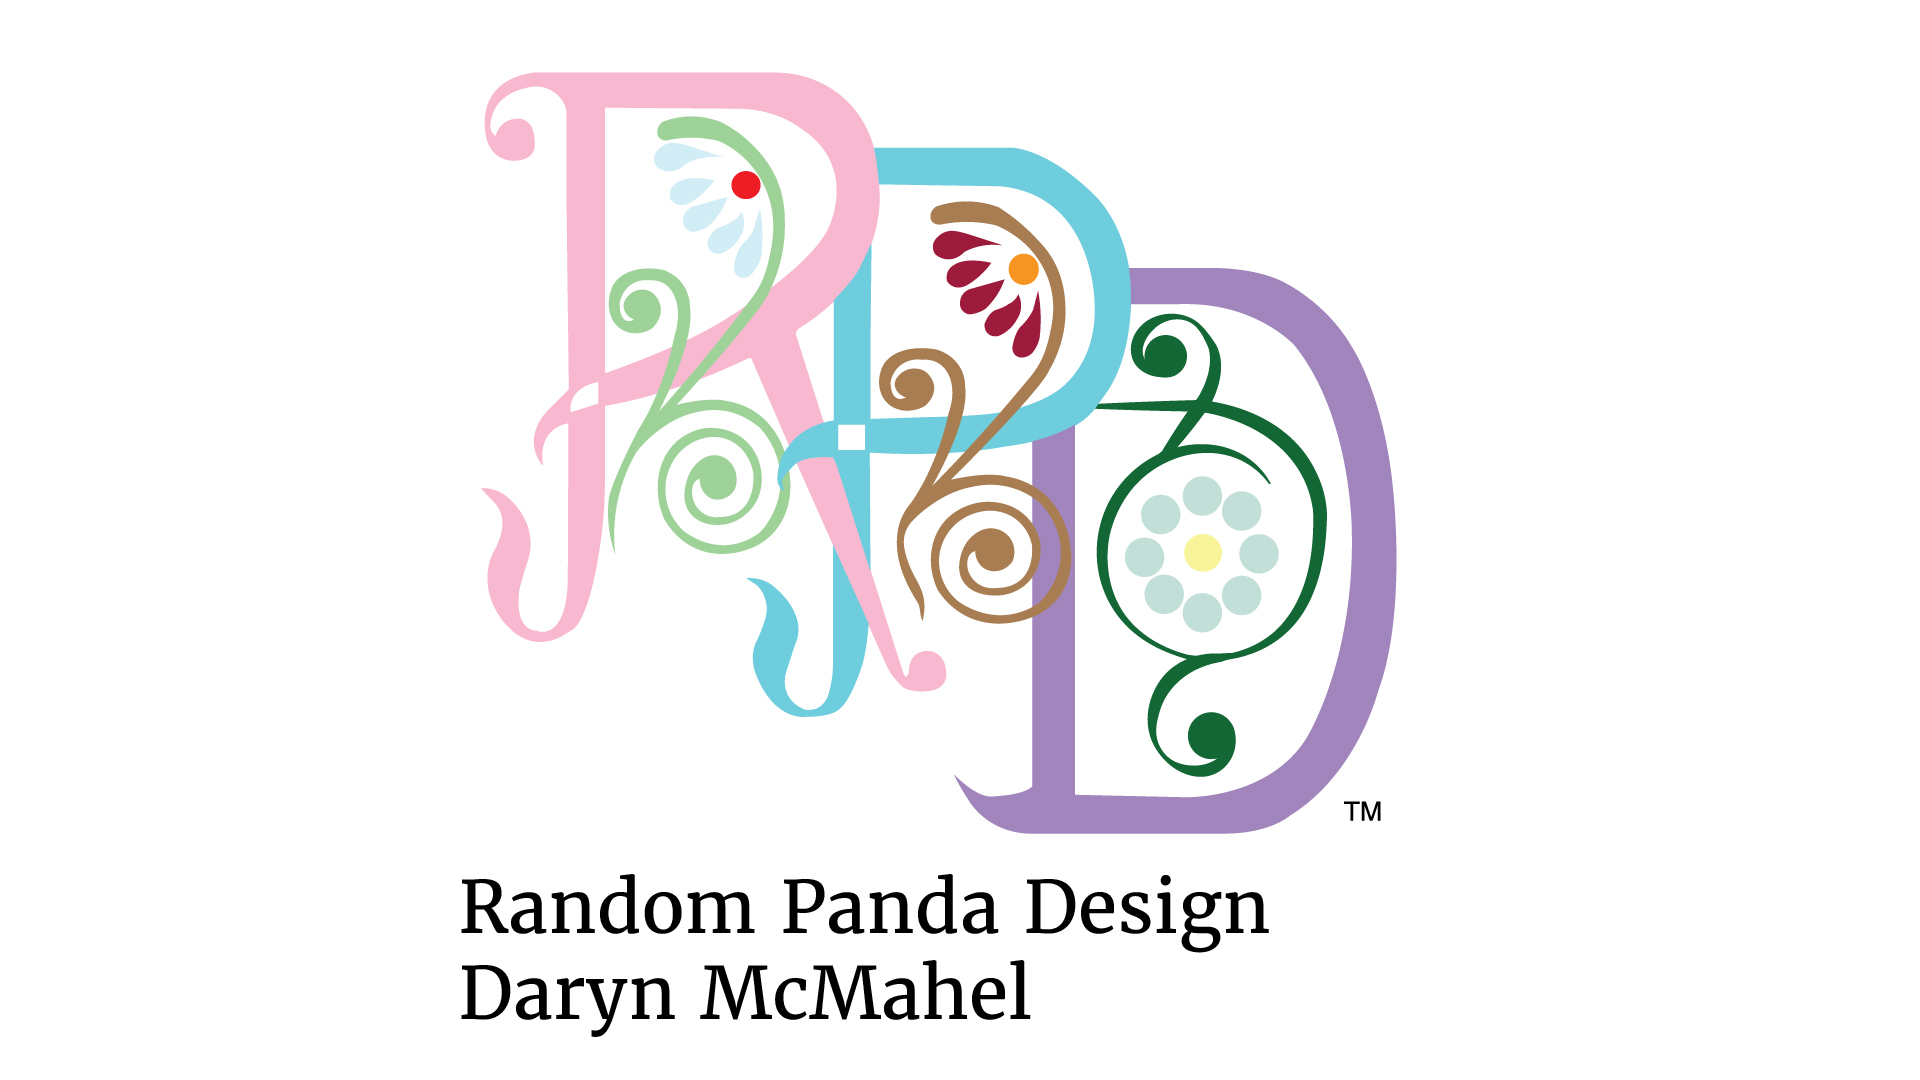 Random Panda Design / “Random Panda Design,” RPD ligature logo, 4 x 3.5 inches brand logo, 2022. This ligature logo captures the essence of RPD to bring more color into the world. 